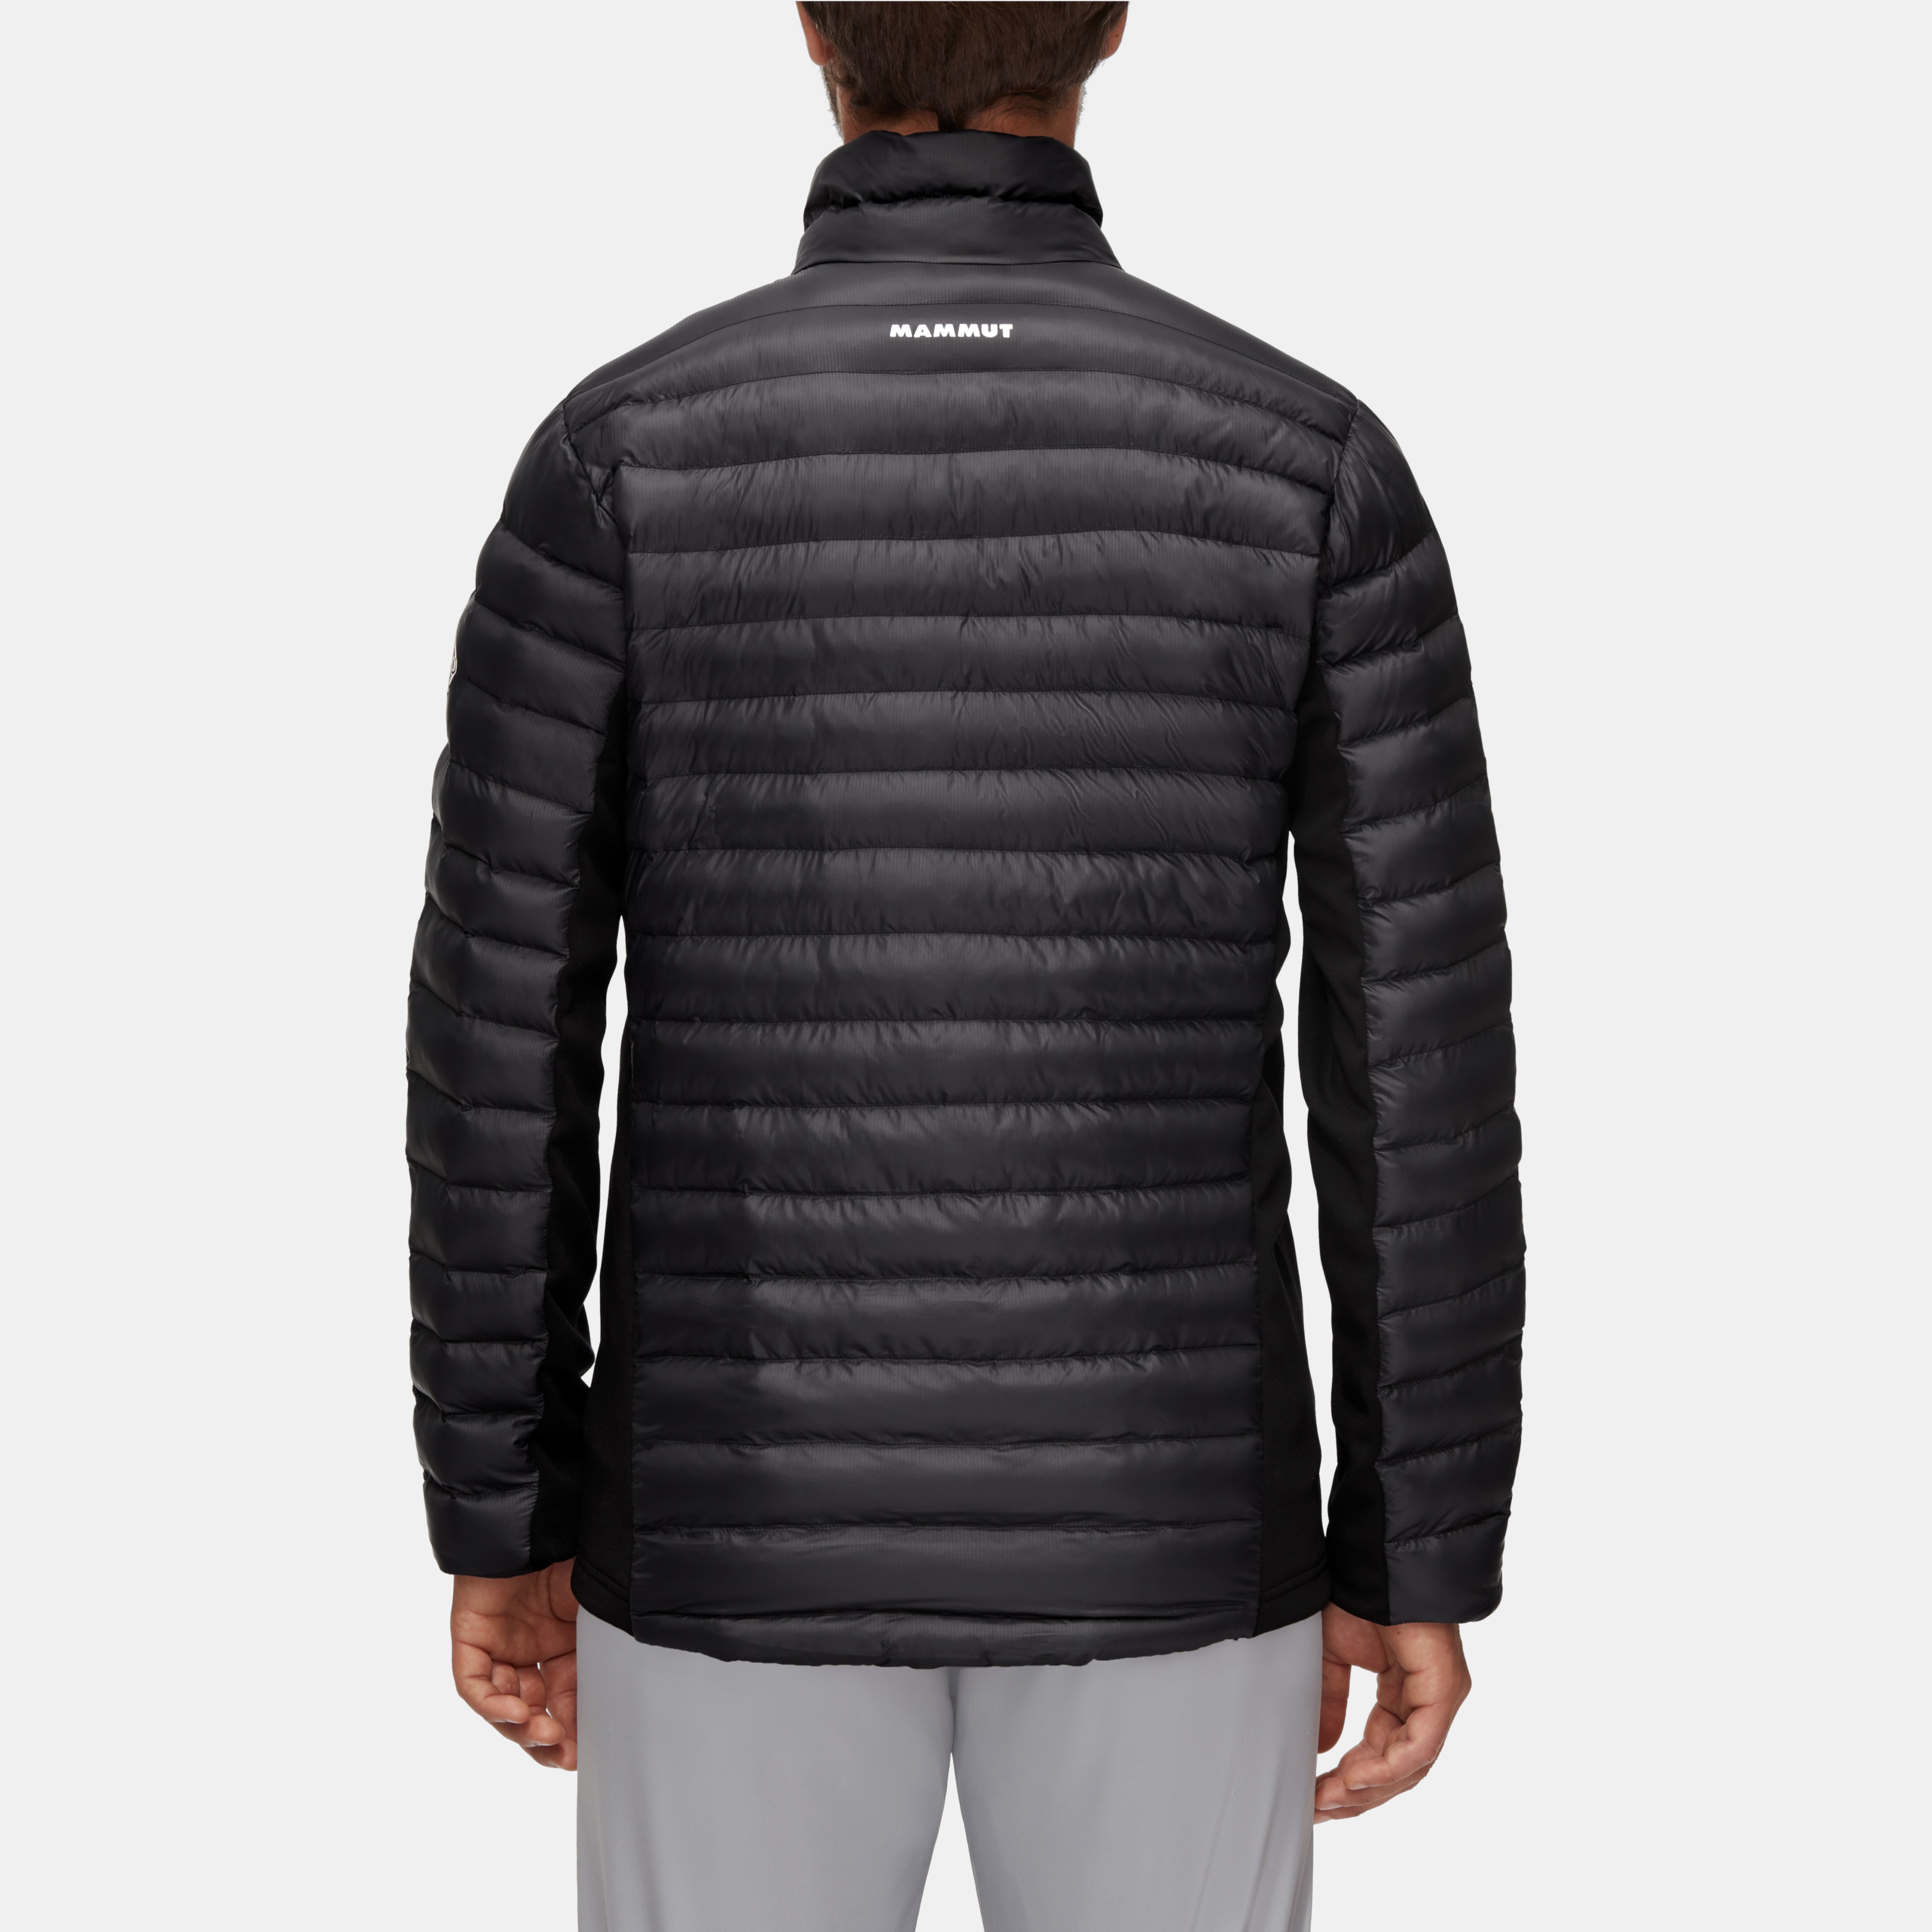 Albula IN Hybrid Jacket Men product image